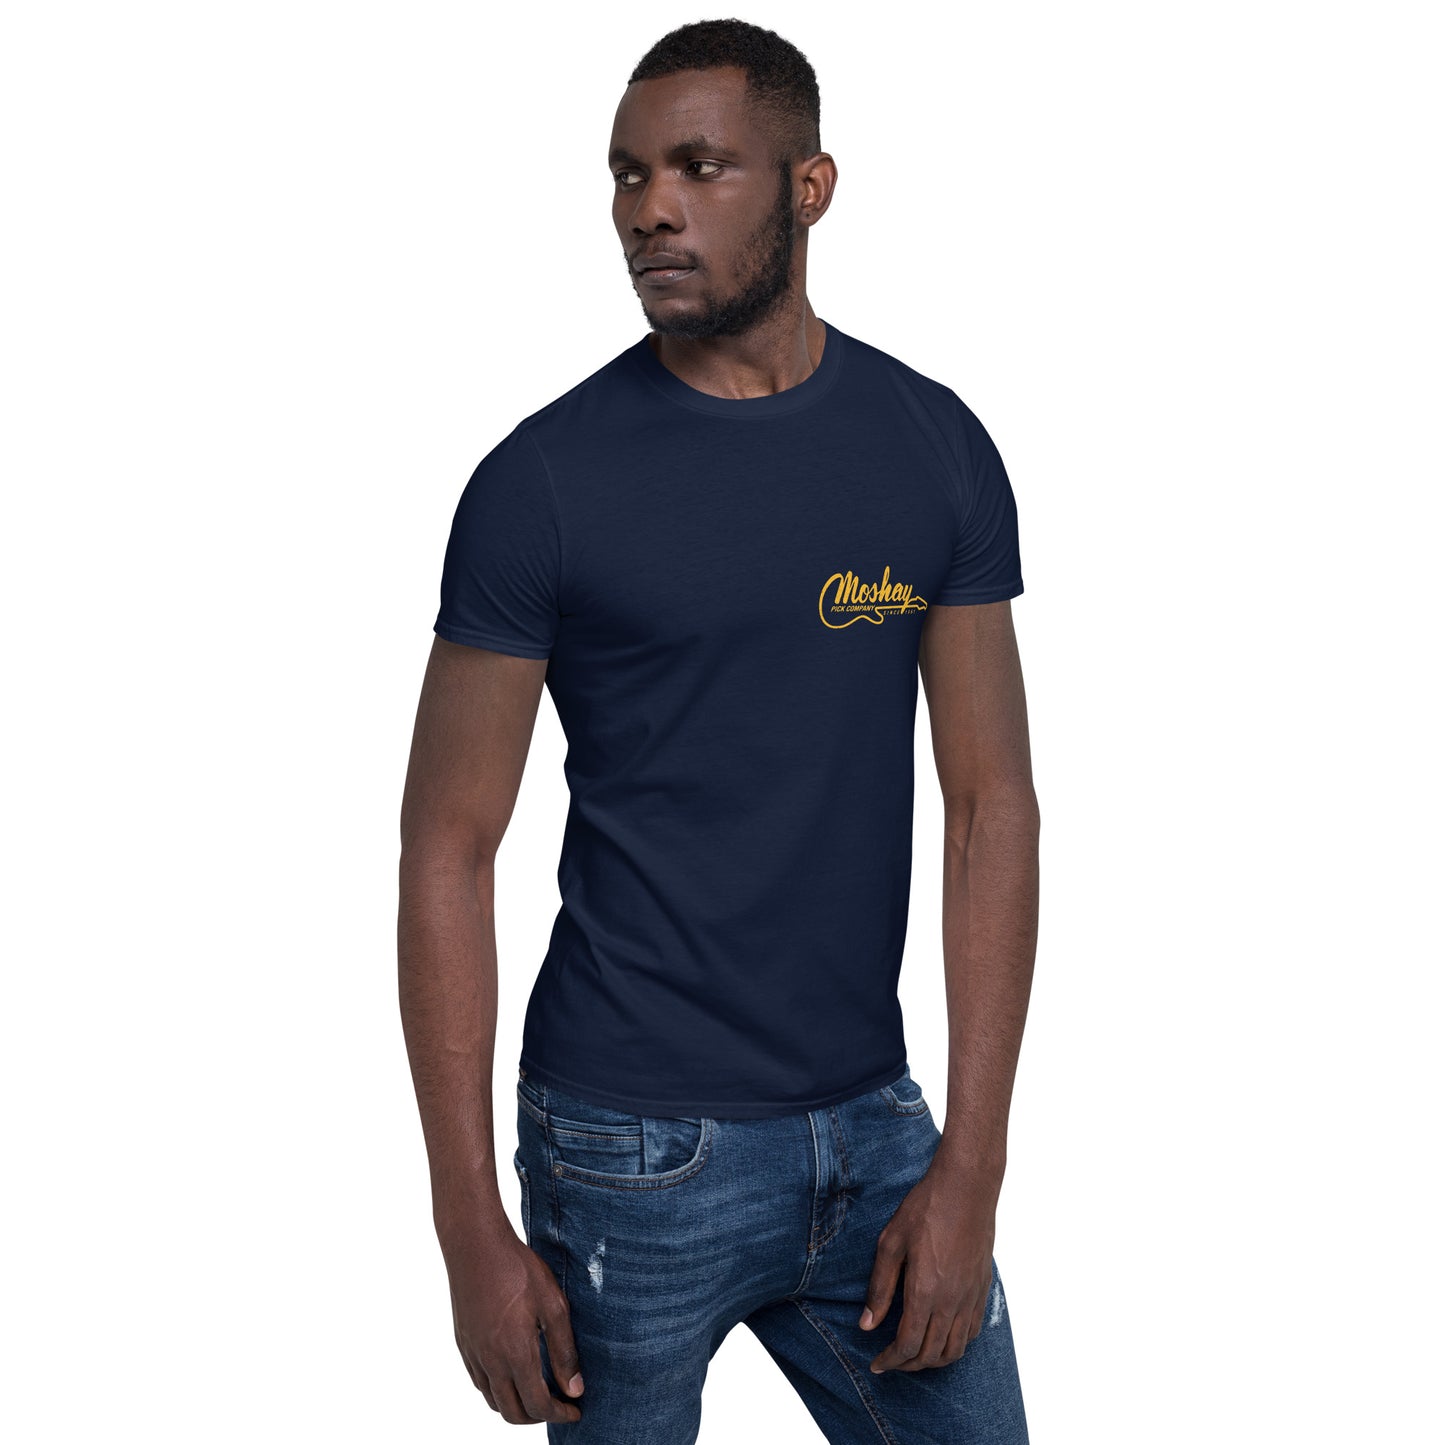 Moshay Pick Two Sided Short-Sleeve Unisex T-Shirt